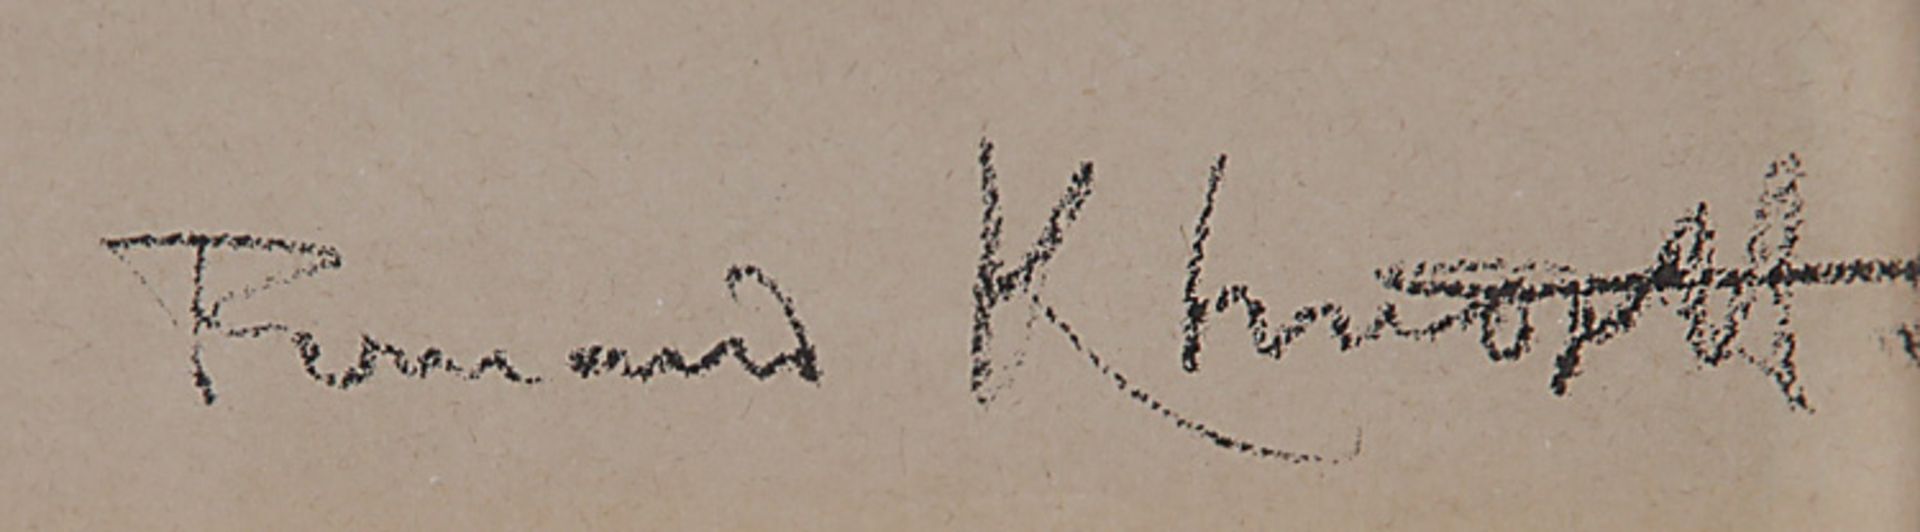 Khnoppf, Fernand1858 Grembergen -1921 Brüssel; belg. Maler, Grafiker, Bildhauer und Fotograf. - Bild 2 aus 2